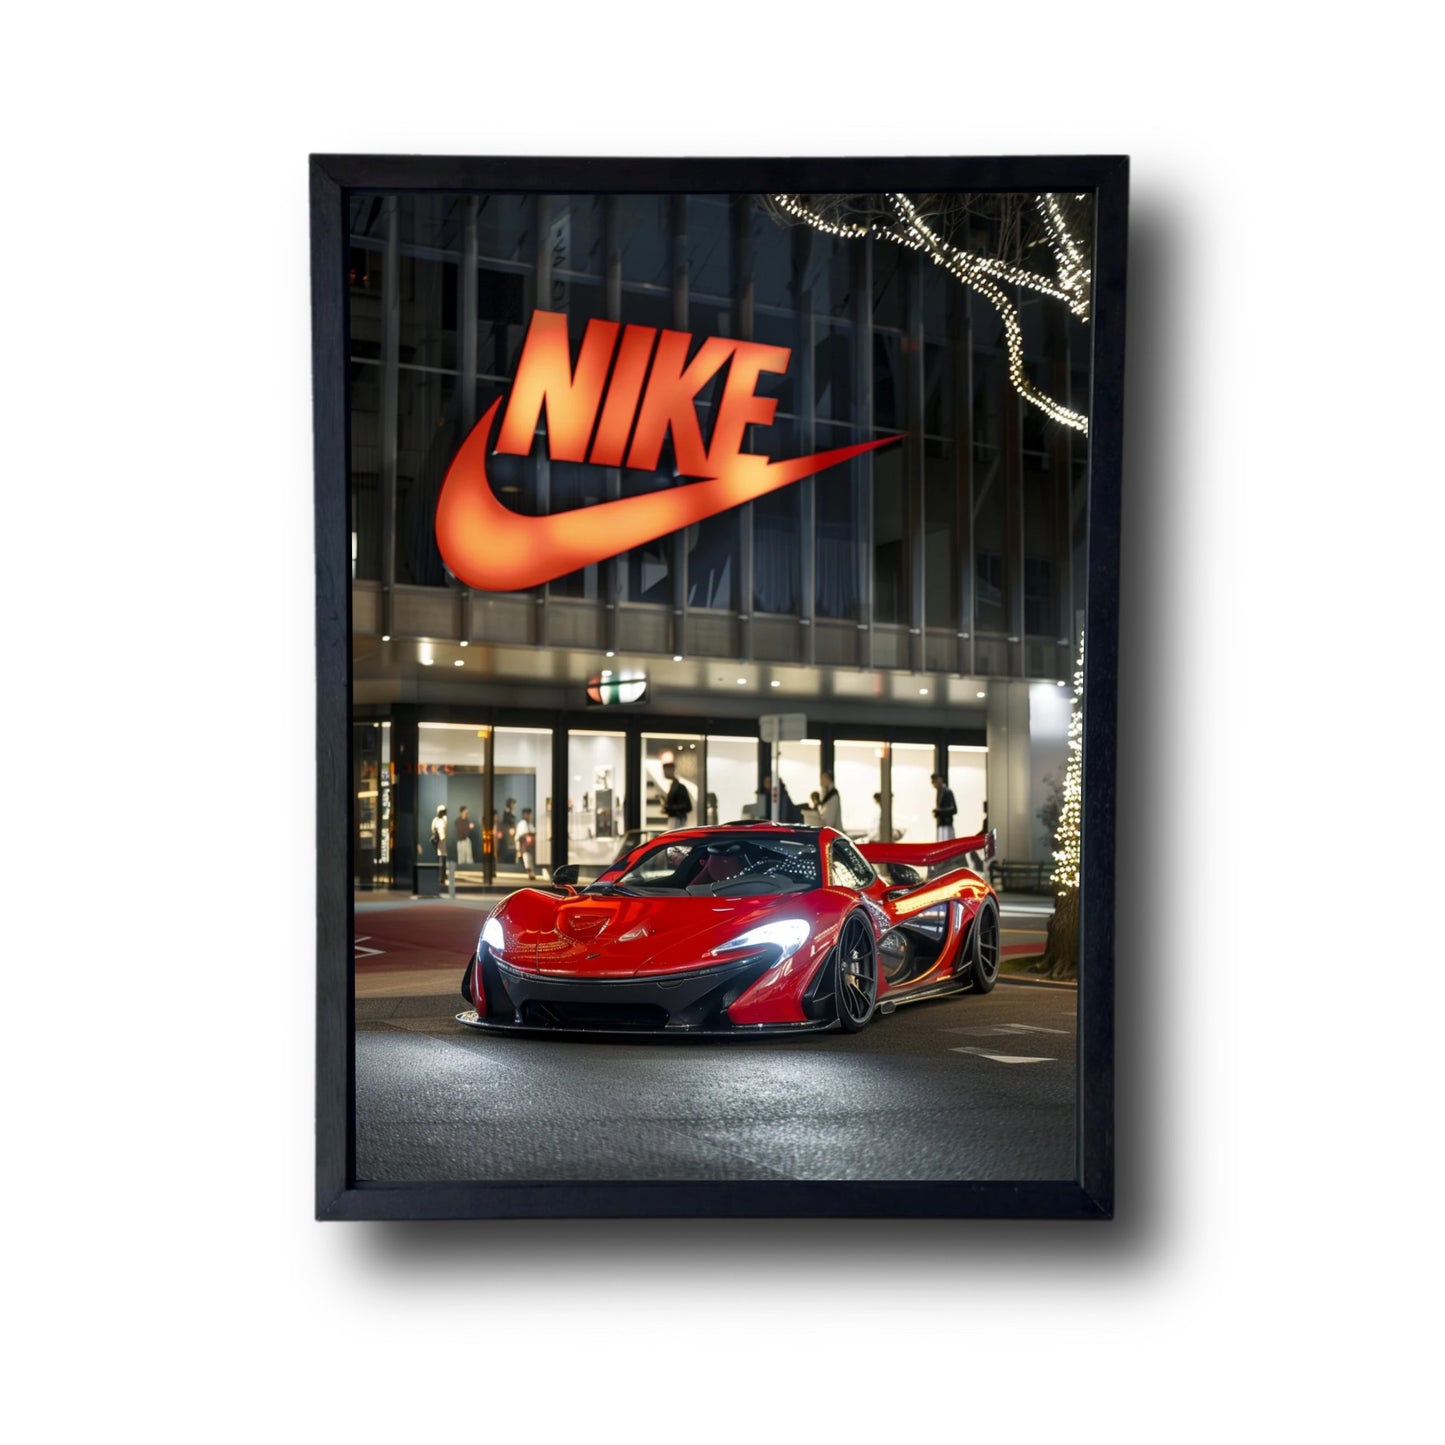 Mclaren Front of Nike Store 2.0